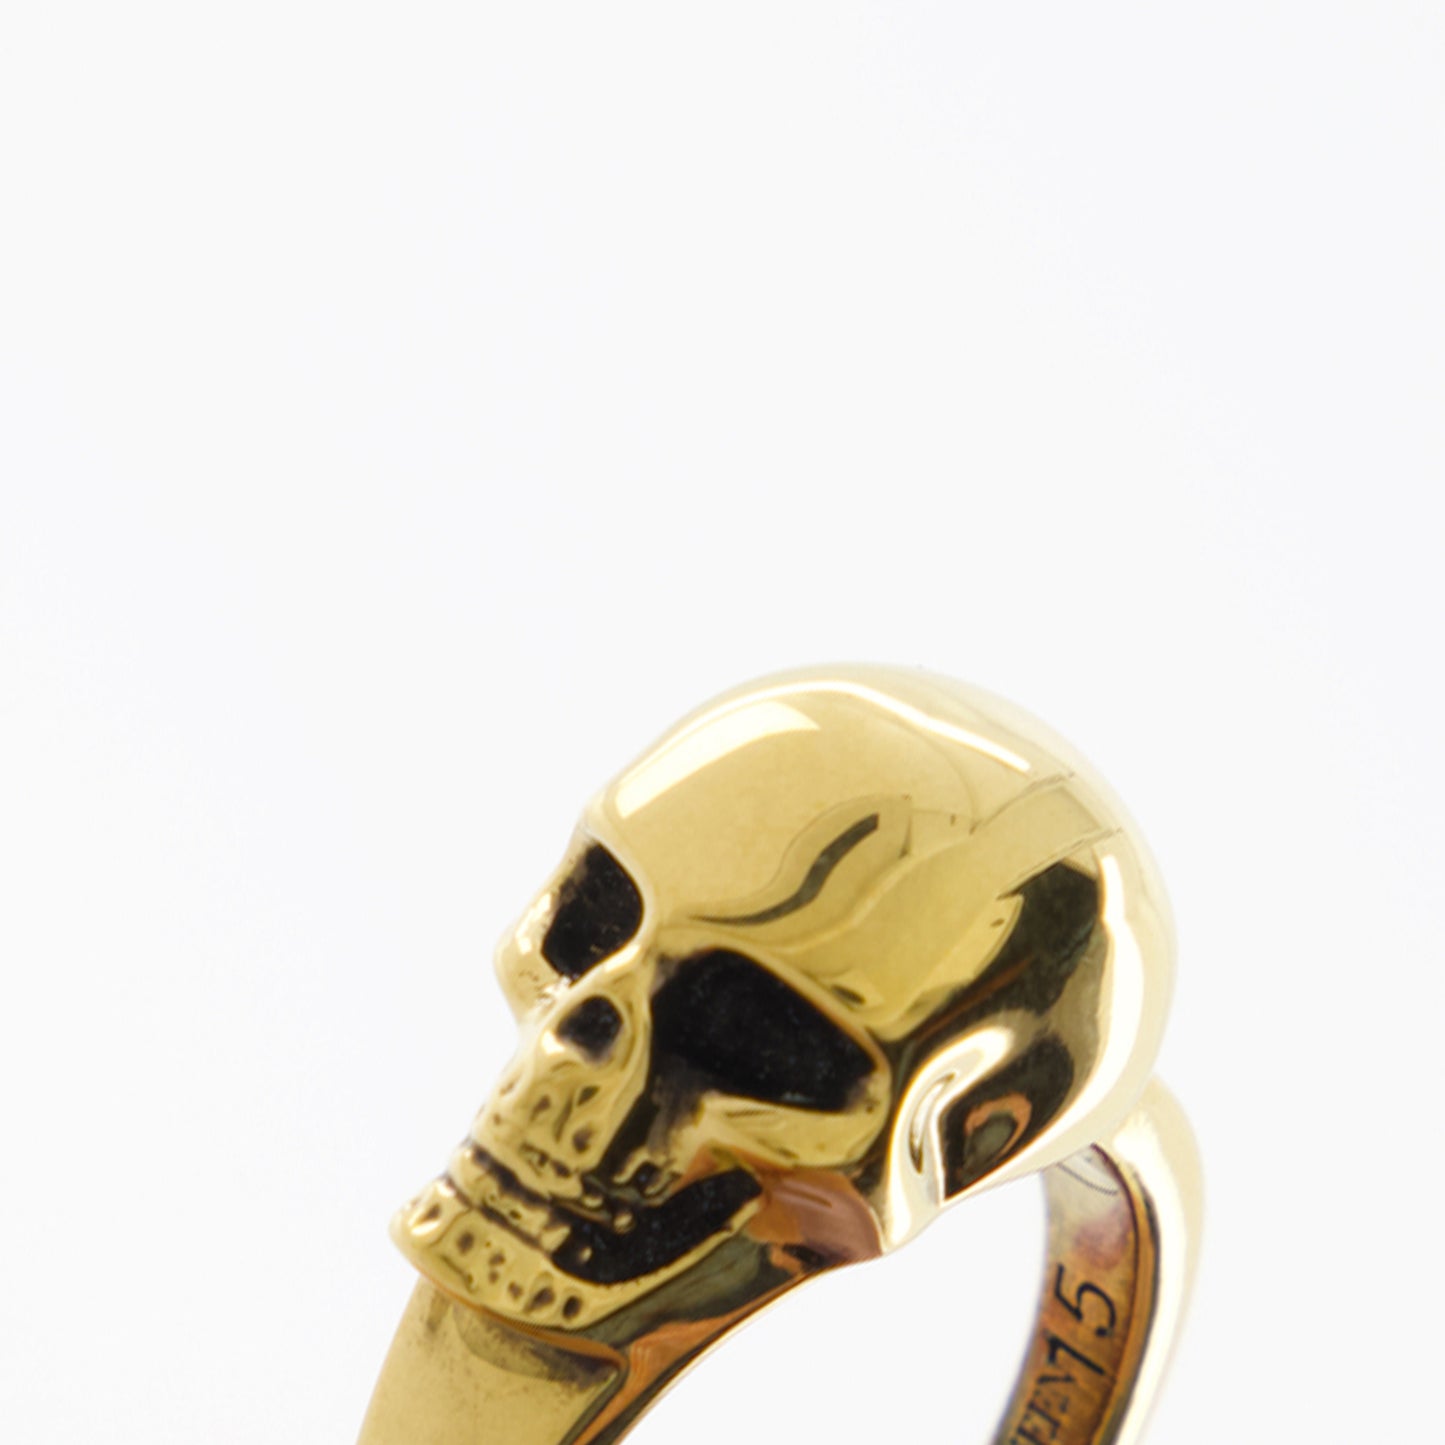 The Side Skull Ring